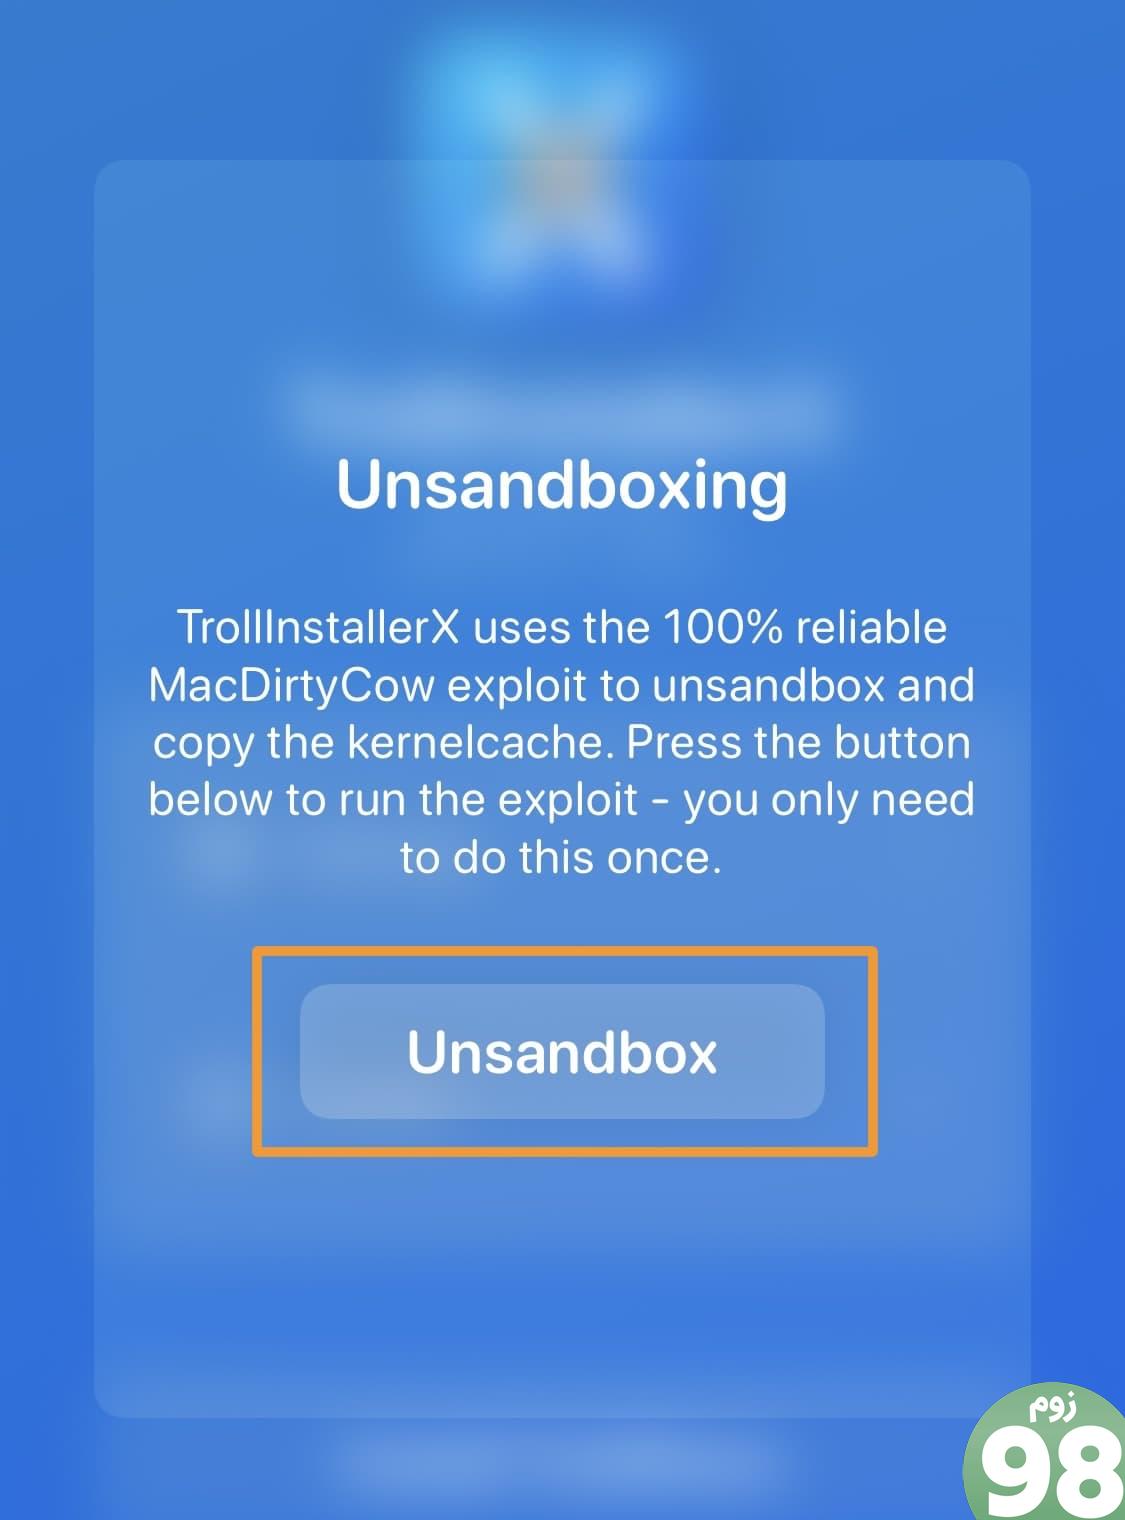 روی دکمه Unsandbox در TrollInstallerX ضربه بزنید.